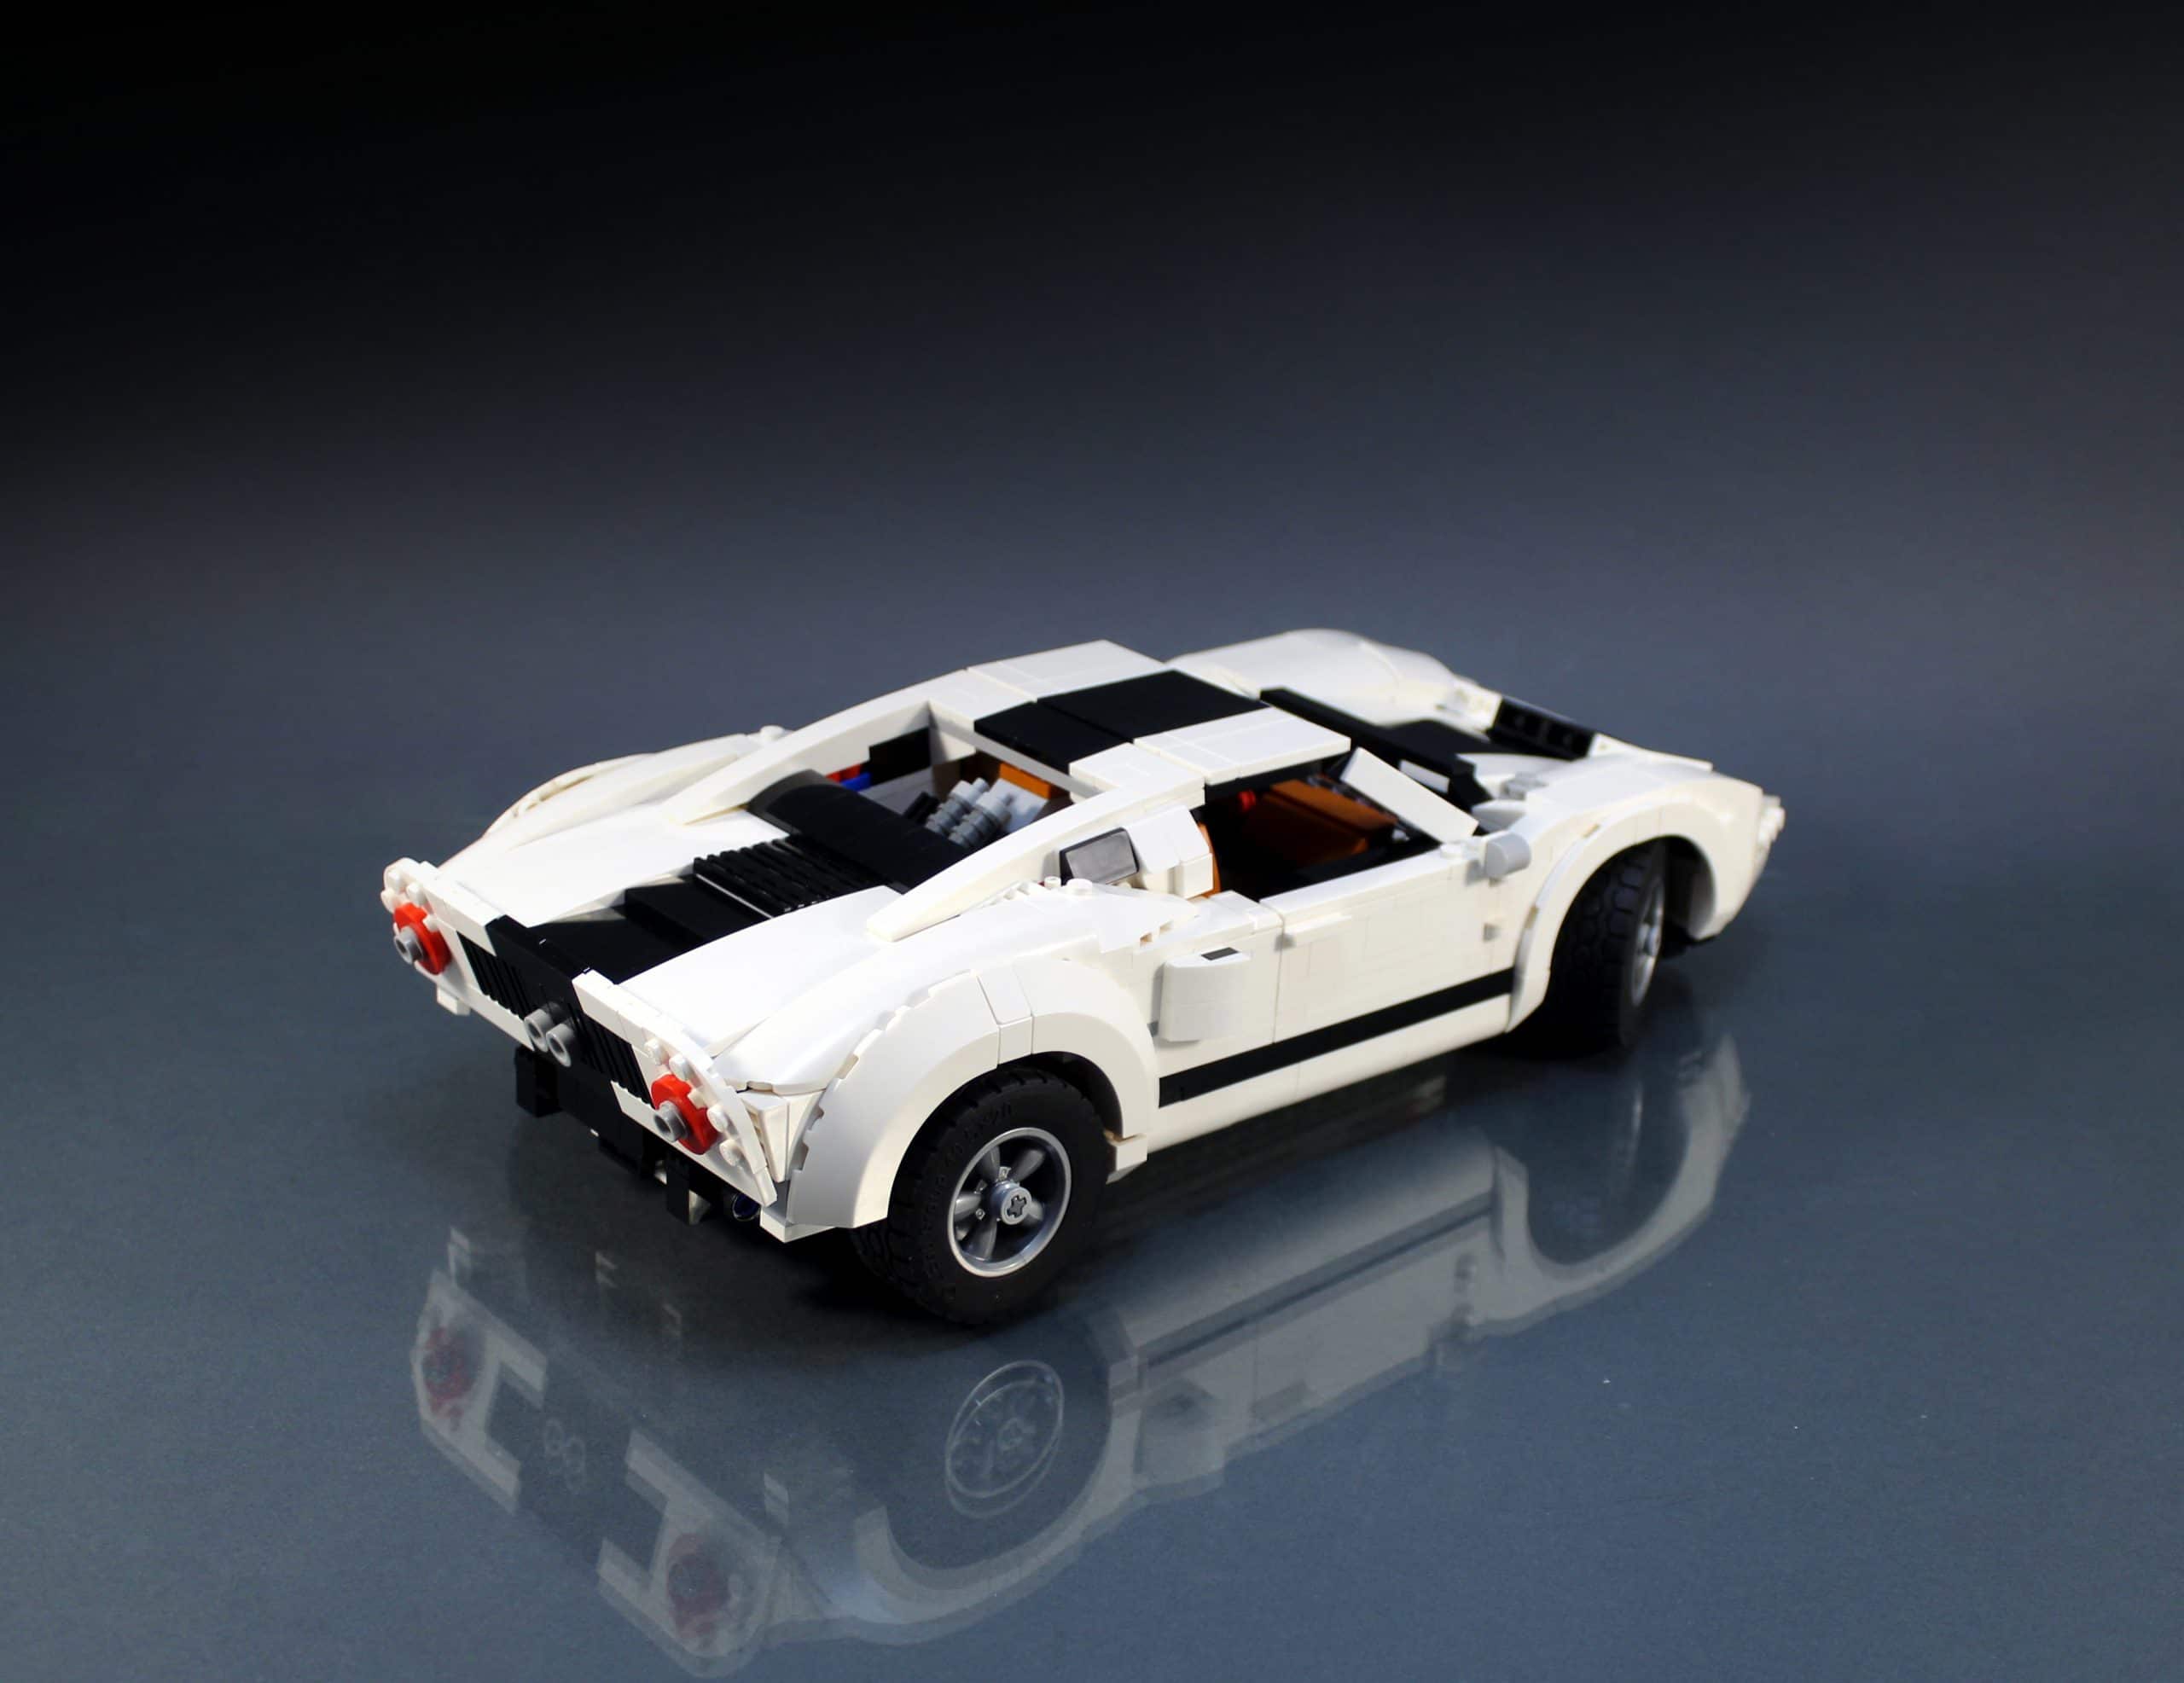 LEGO MOC 10295 Ford GT40 by firas_legocars